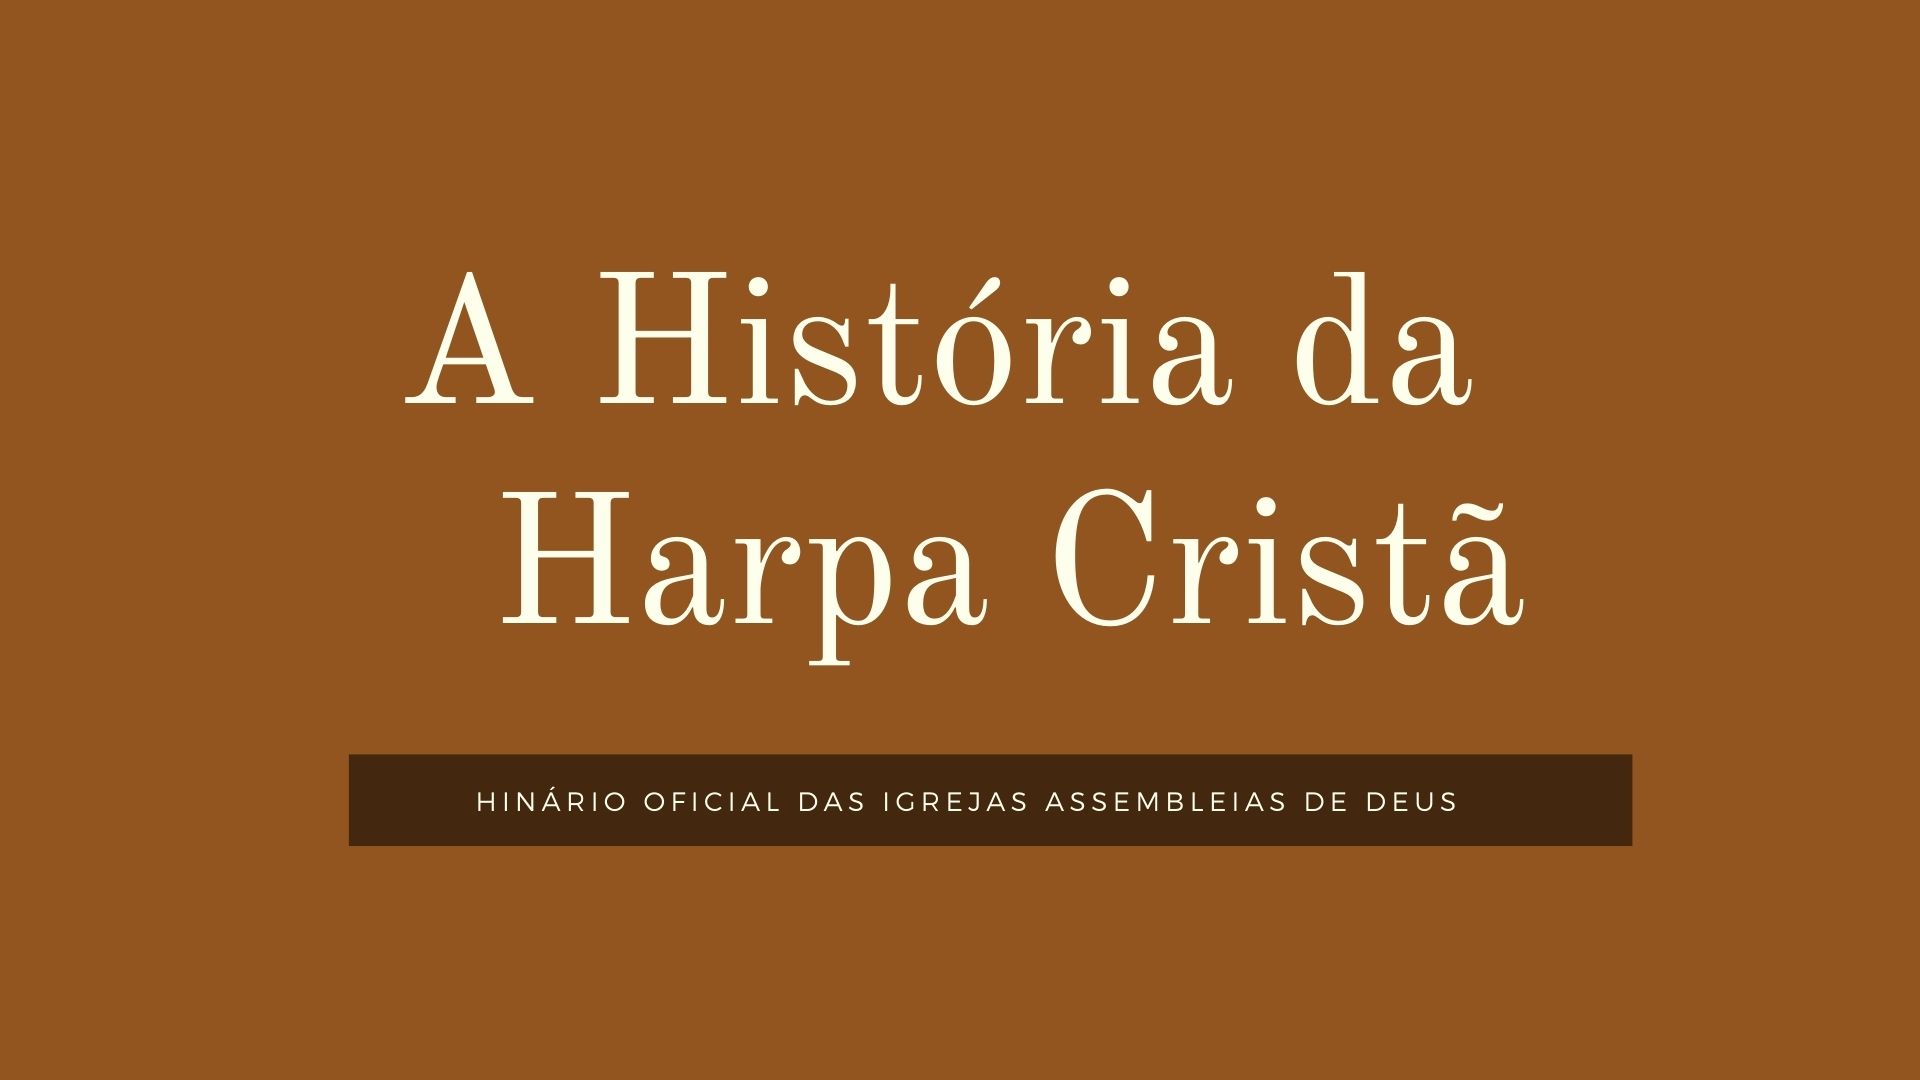 imagem marrom com nome branco sobre a história da harpa cristã e descrição abaixo de hinário das igrejas assembleias de Deus